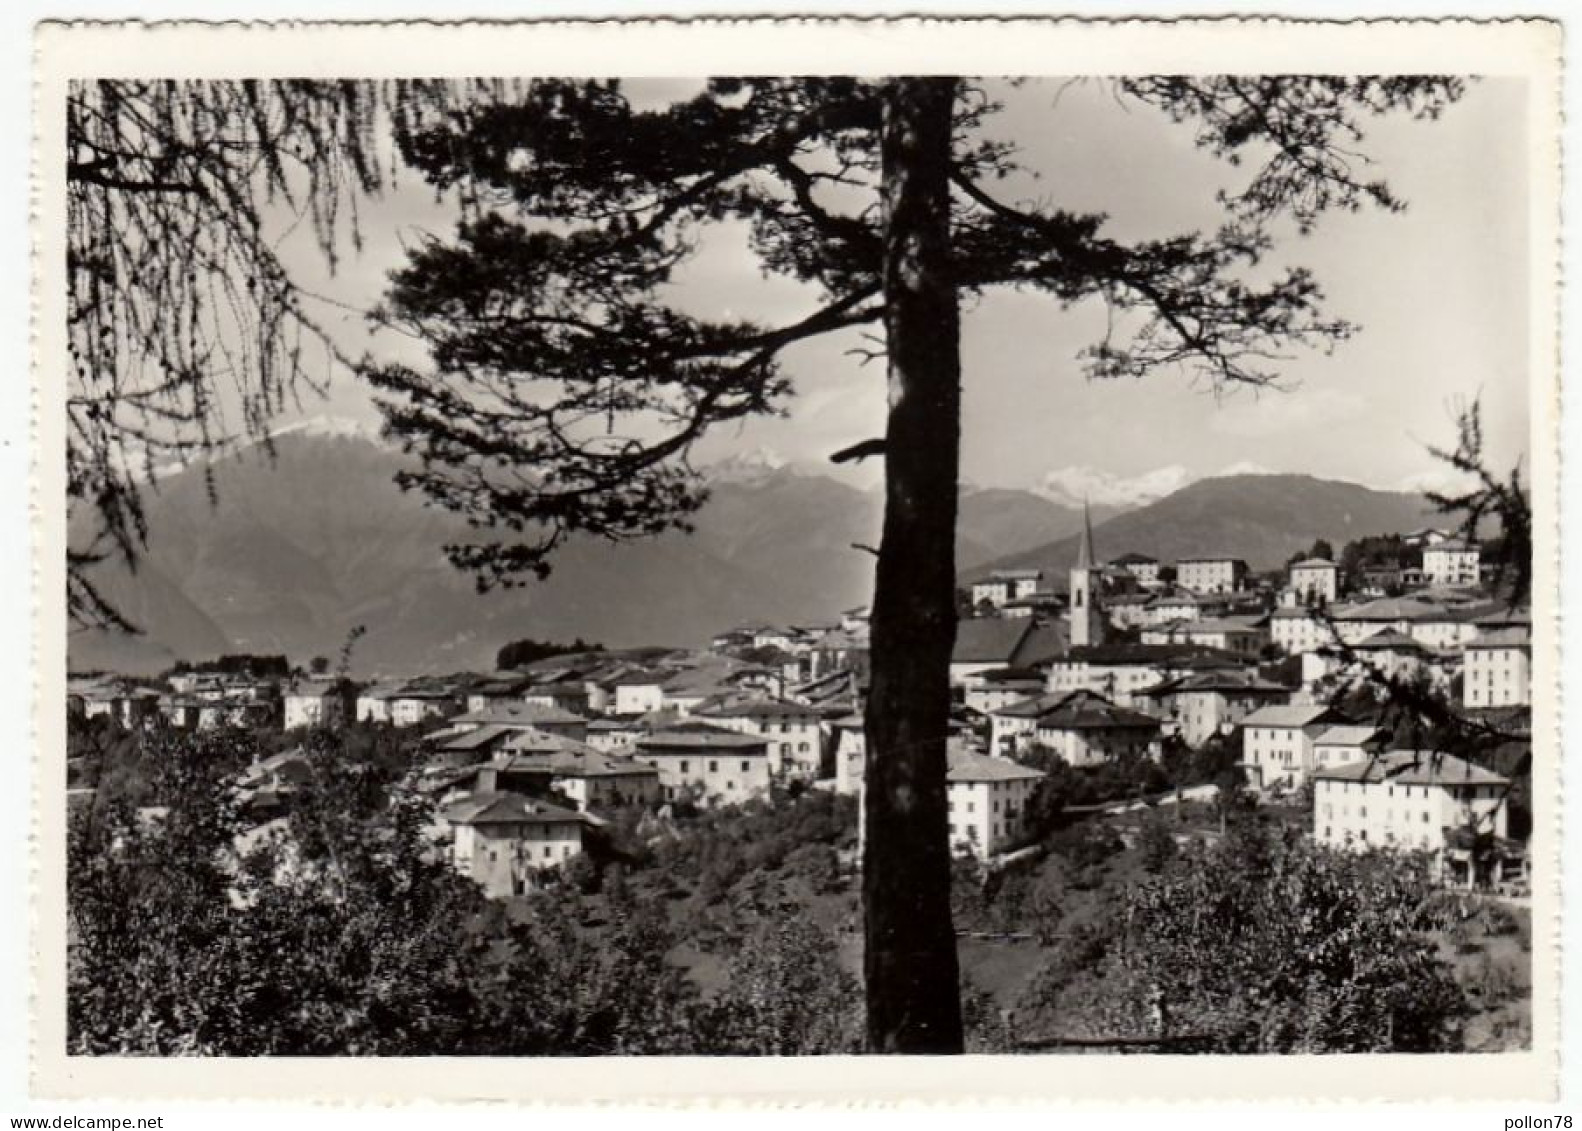 COREDO - VAL DI NON - TRENTO - 1969 - Trento